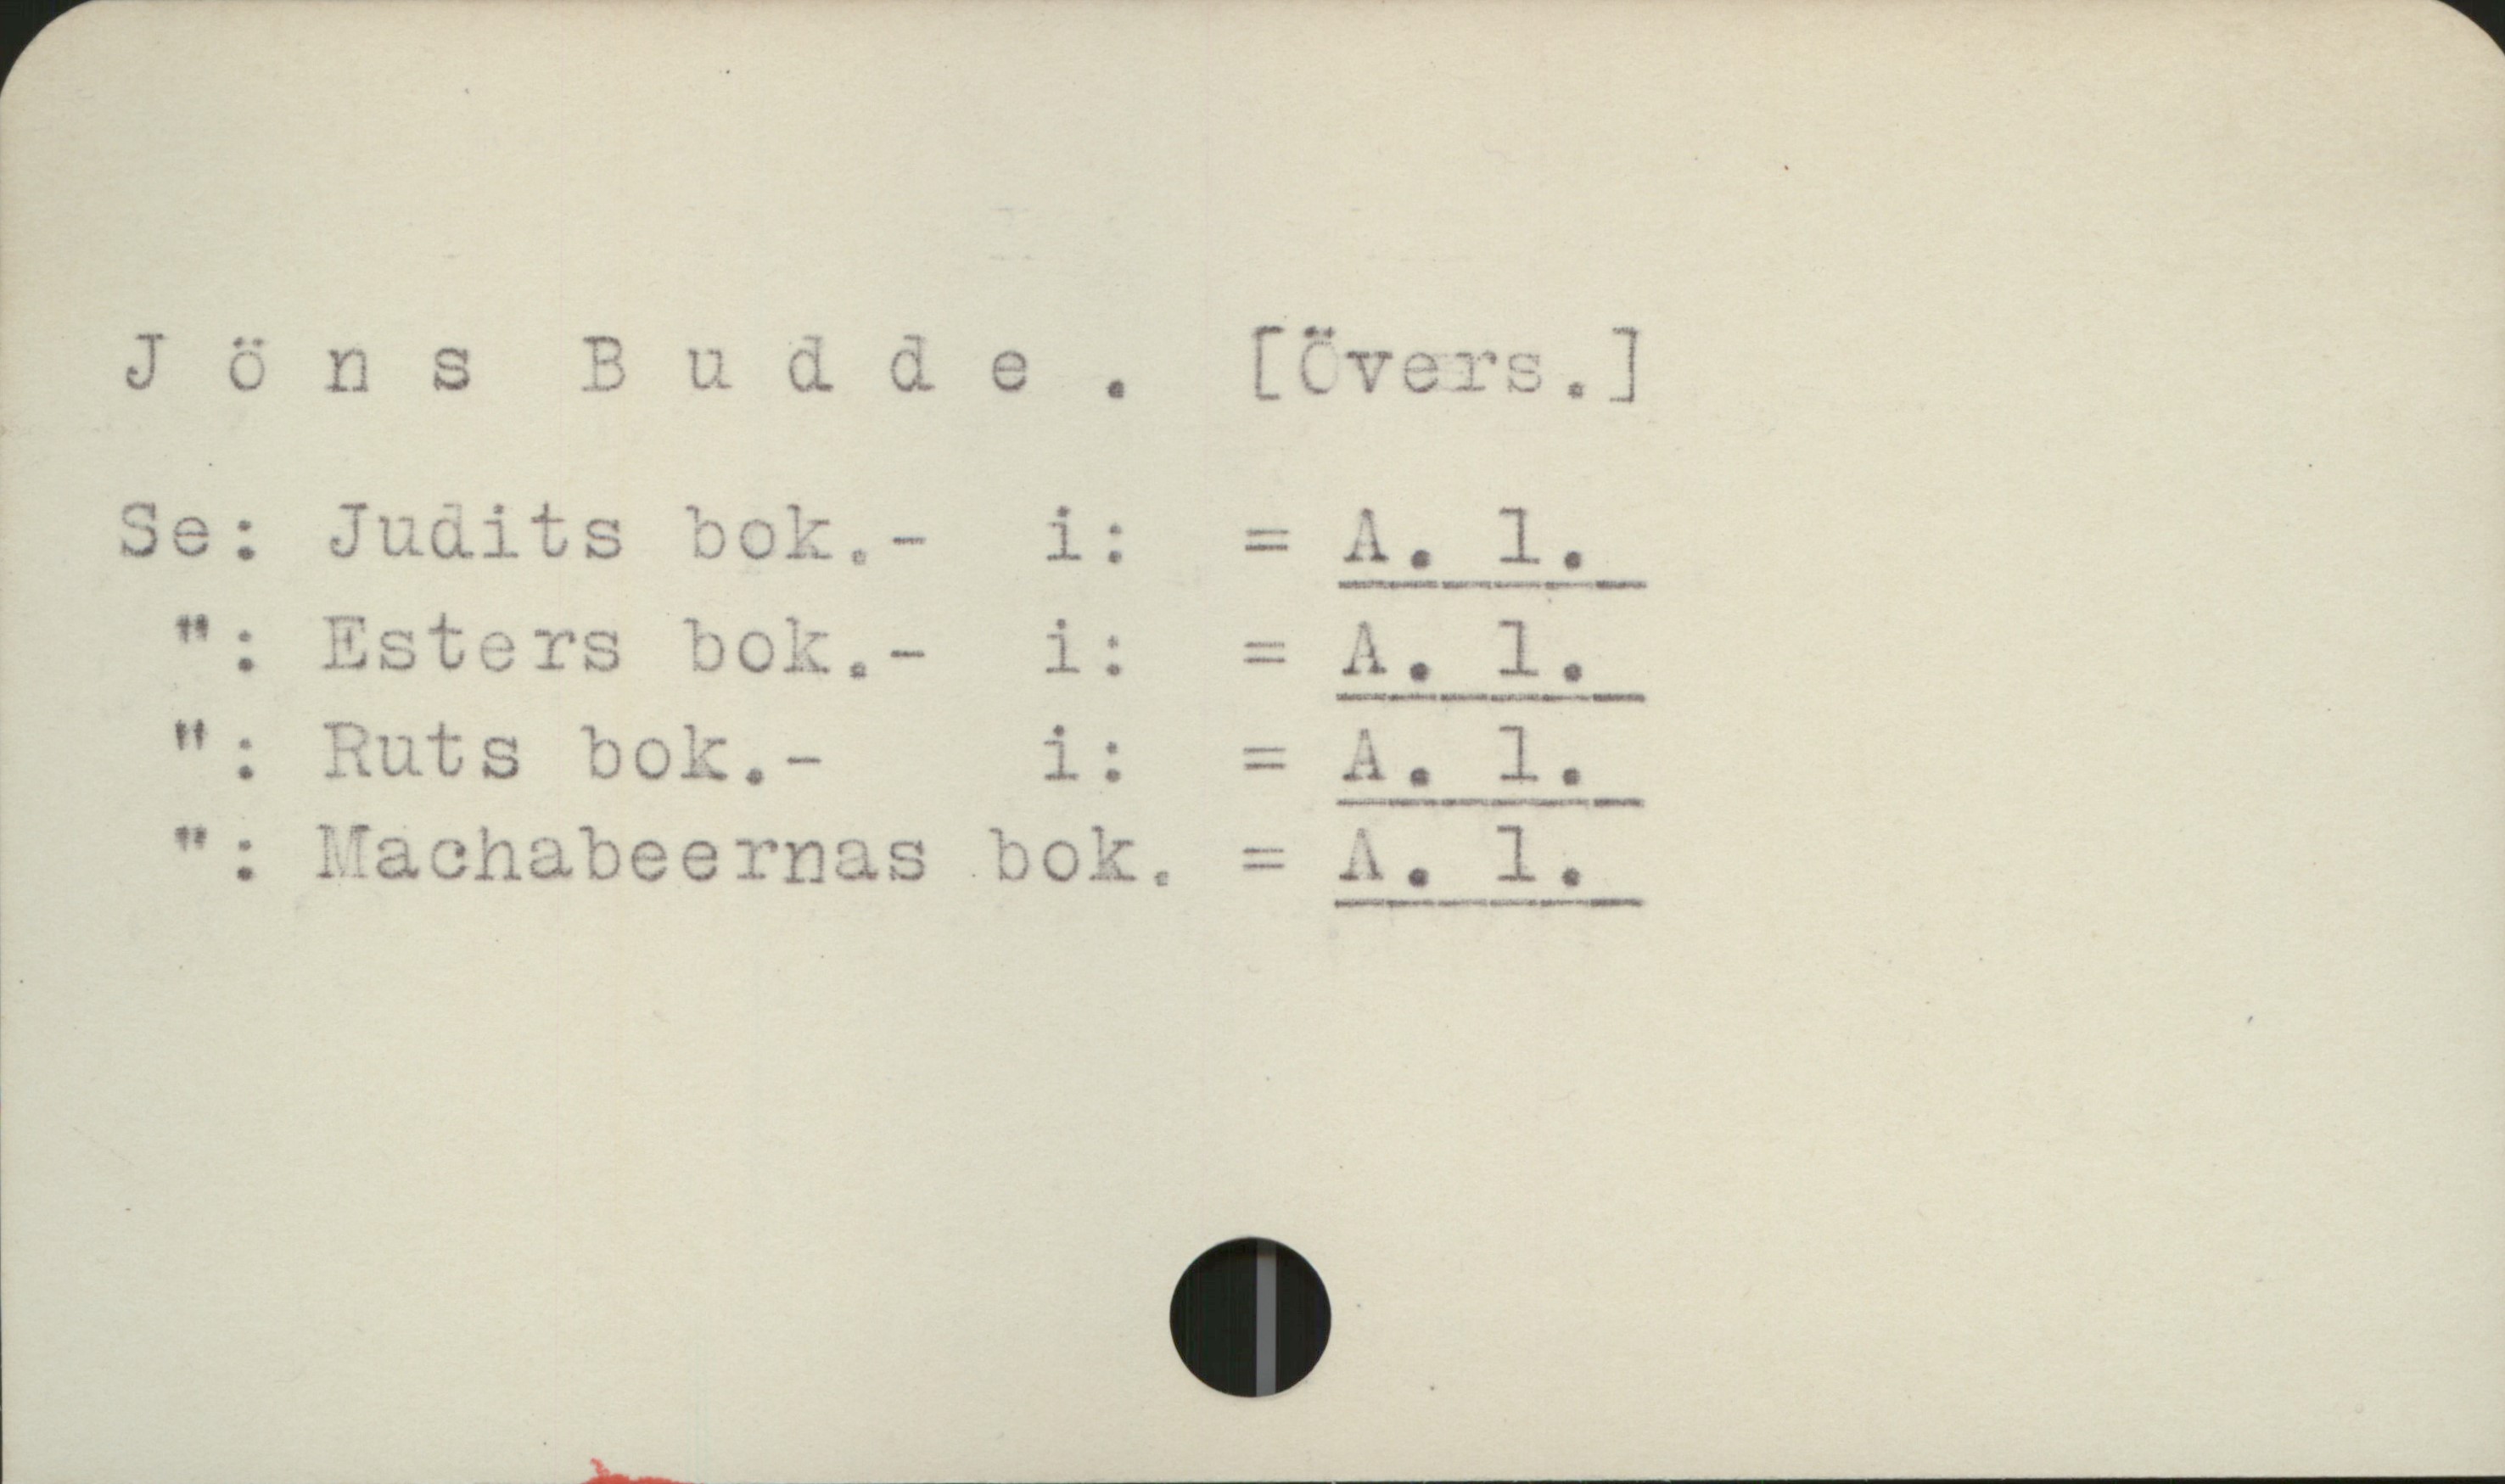 Budde, Jöns Andersson (ca 1437-ca 1491) Jöns Budde. [Övers .]

Se::   Judits bok             i:   = A 1
 "  :    Esters bok             i:   = A 1
 "  :    Ruts bok                i:   = A 1
 "  :    Machabeernas bok  = A 1